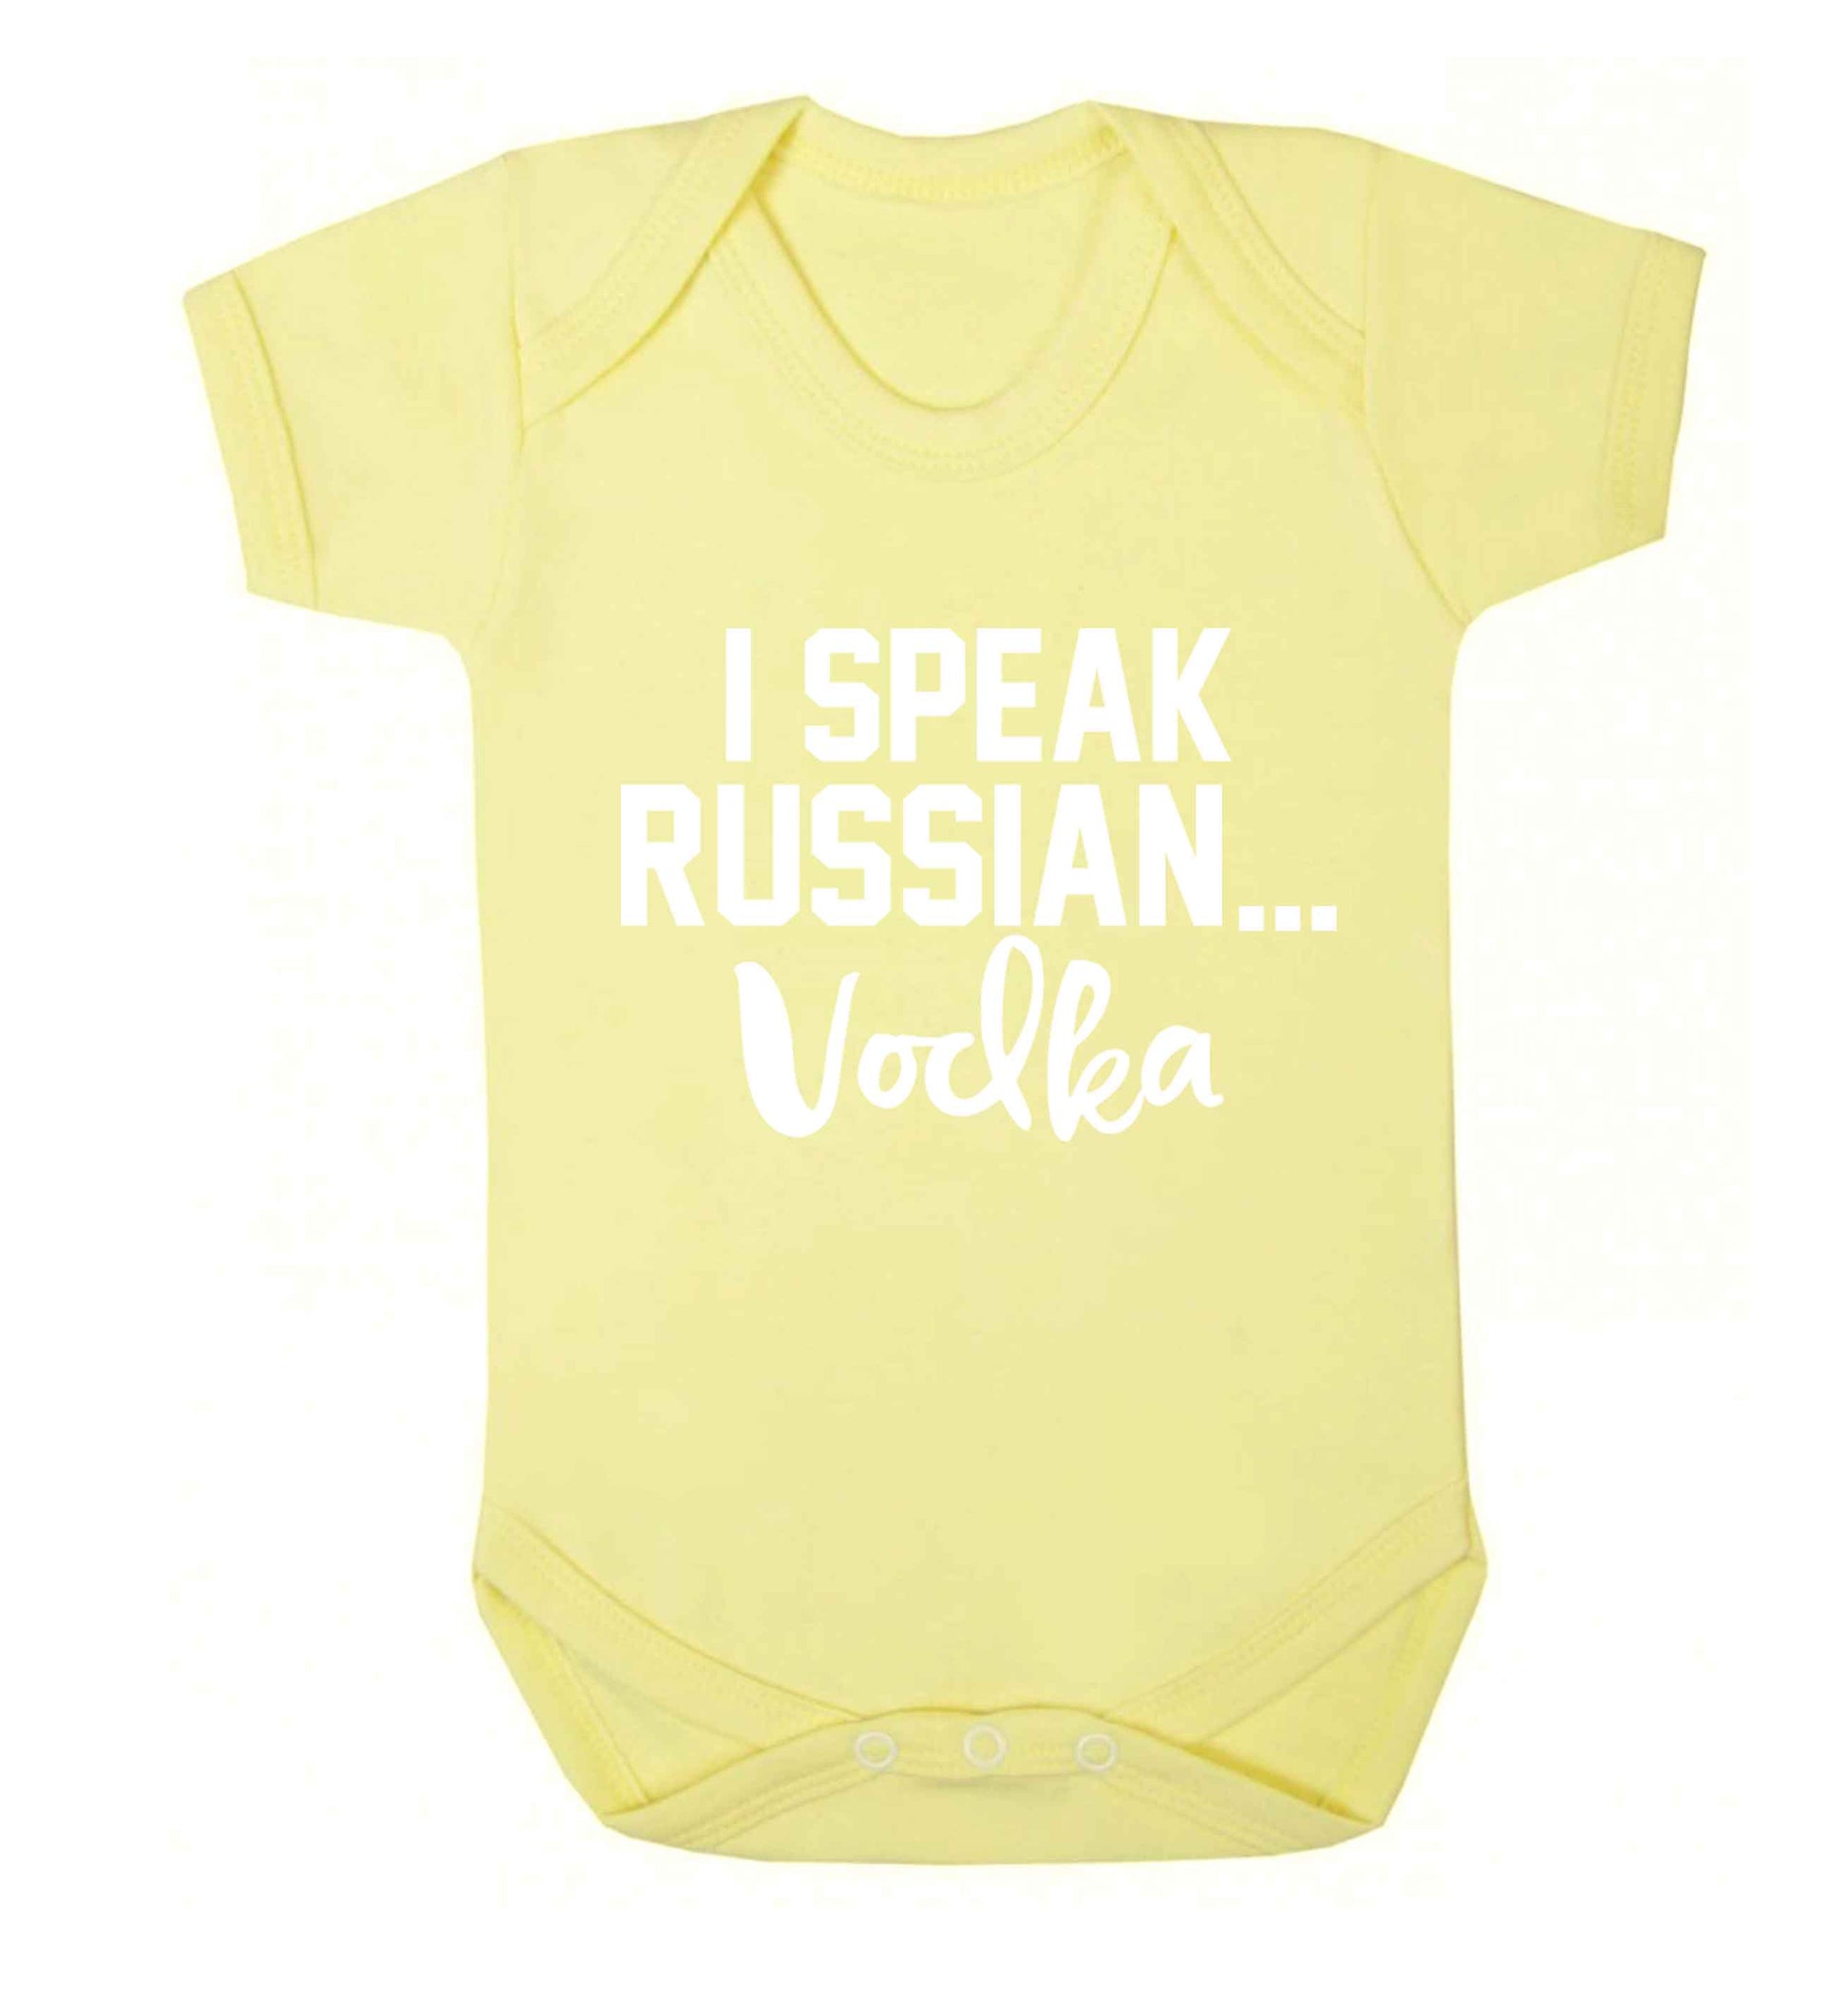 I speak russian...vodka Baby Vest pale yellow 18-24 months